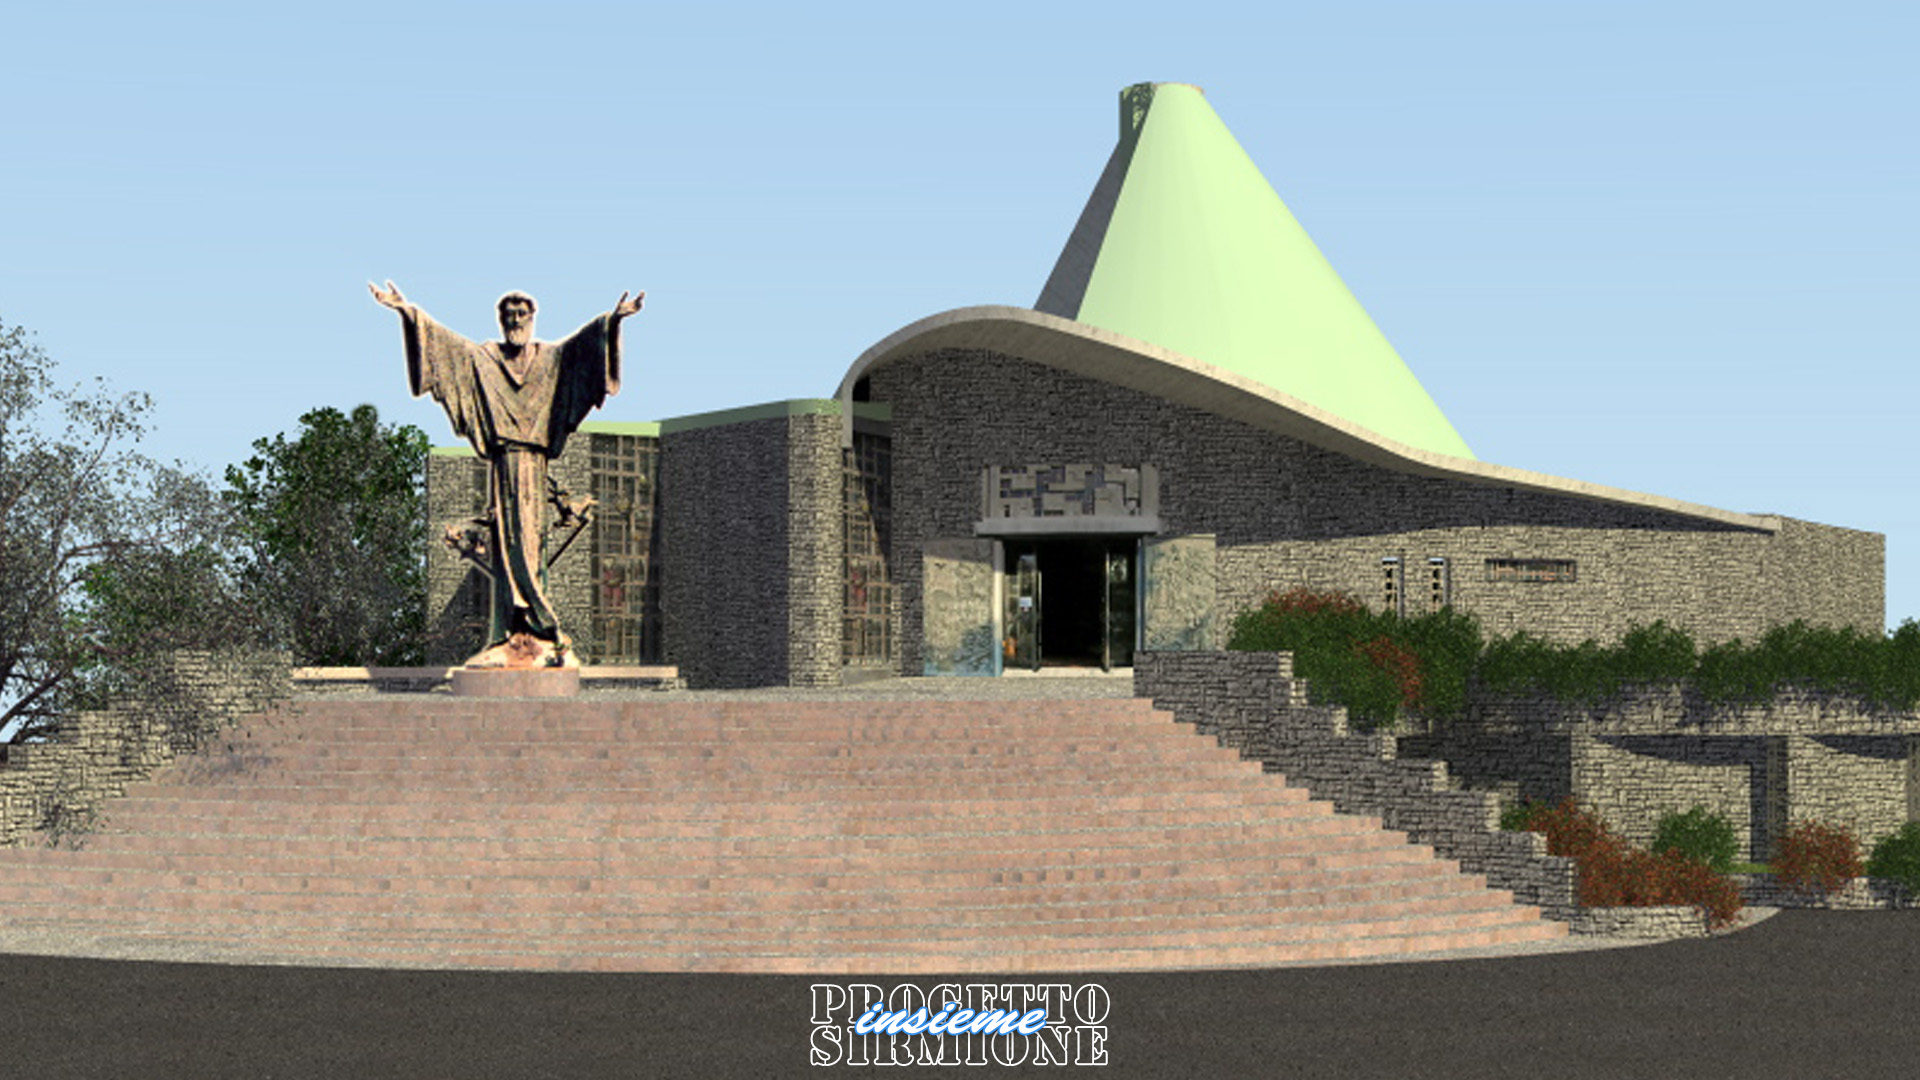 Progetto Sirmione Insieme_Chiesa di San Francesco Colombare di Sirmione - progetto sagrato e fondazione Azelio Vavassori